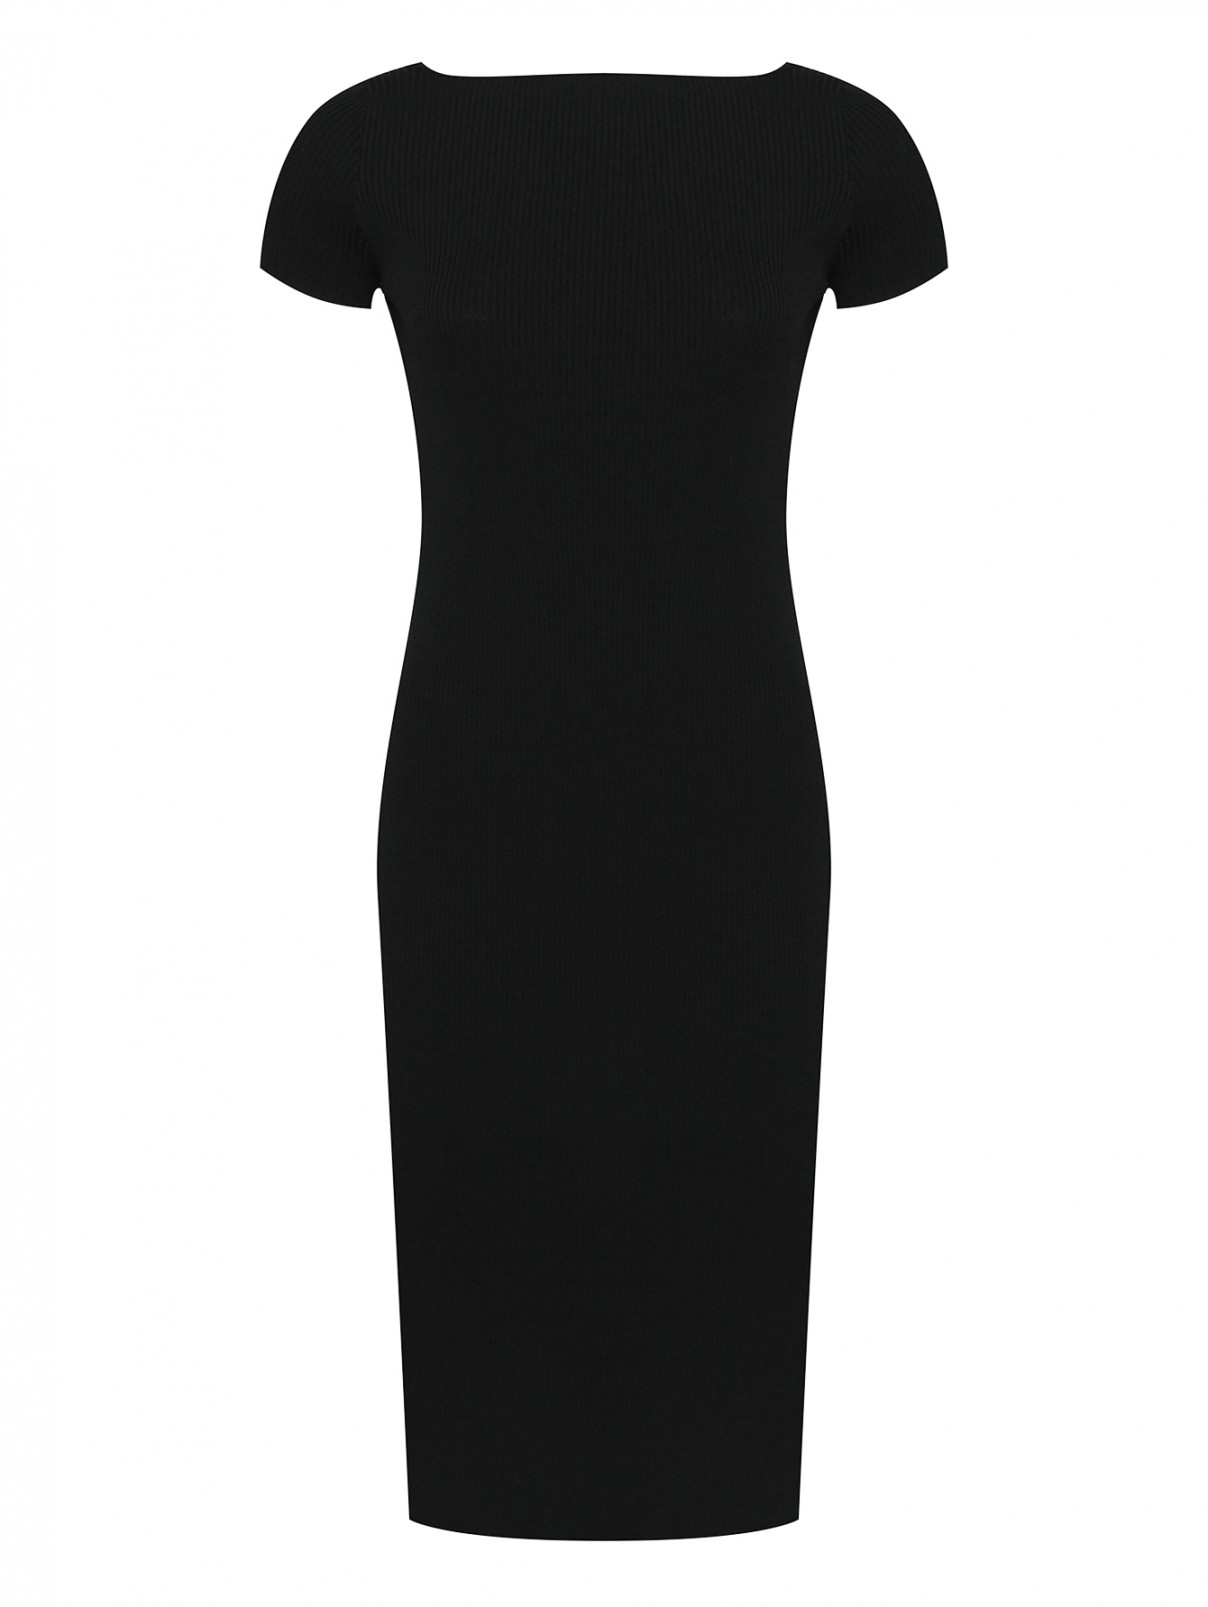 Трикотажное платье с открытой спиной Luisa Spagnoli  –  Общий вид  – Цвет:  Черный